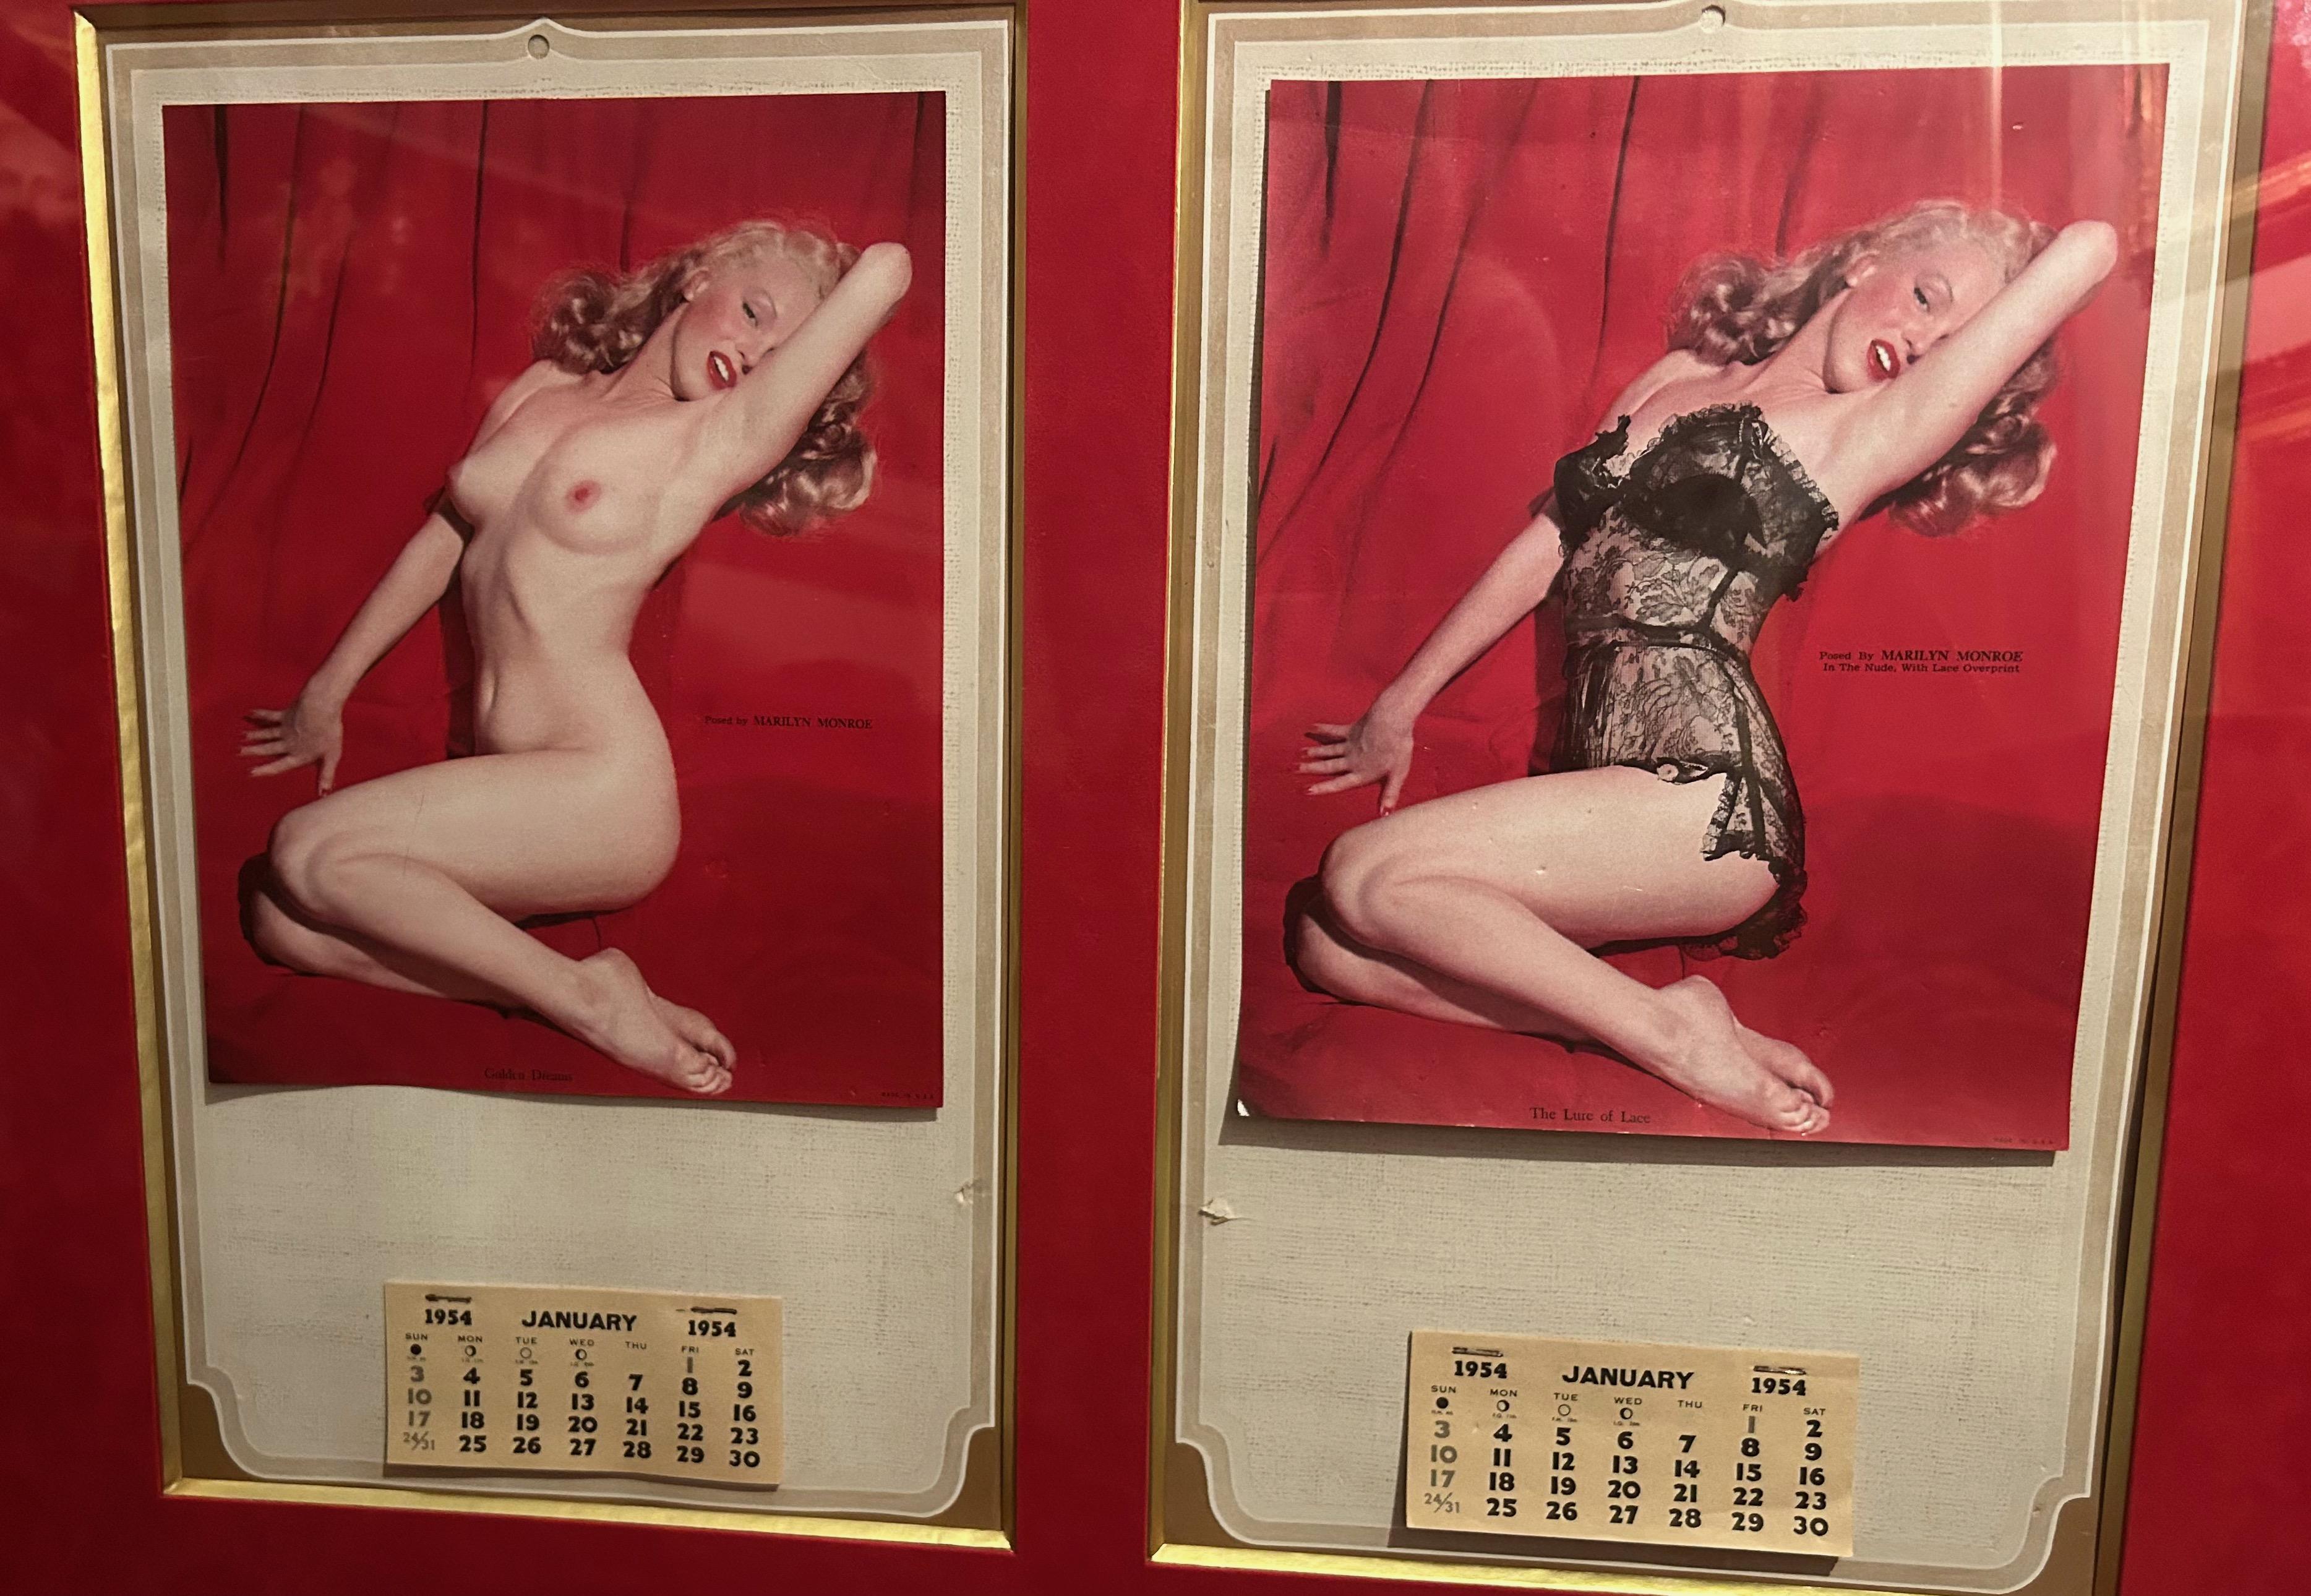 Calendario Marilyn Monroe 1954
Due pagine di calendario del 1954 con agende di Marilyn Monroe in posa nuda e poi vestita con lingerie raffinata grazie a un dispositivo speciale. 
Una reca la scritta 